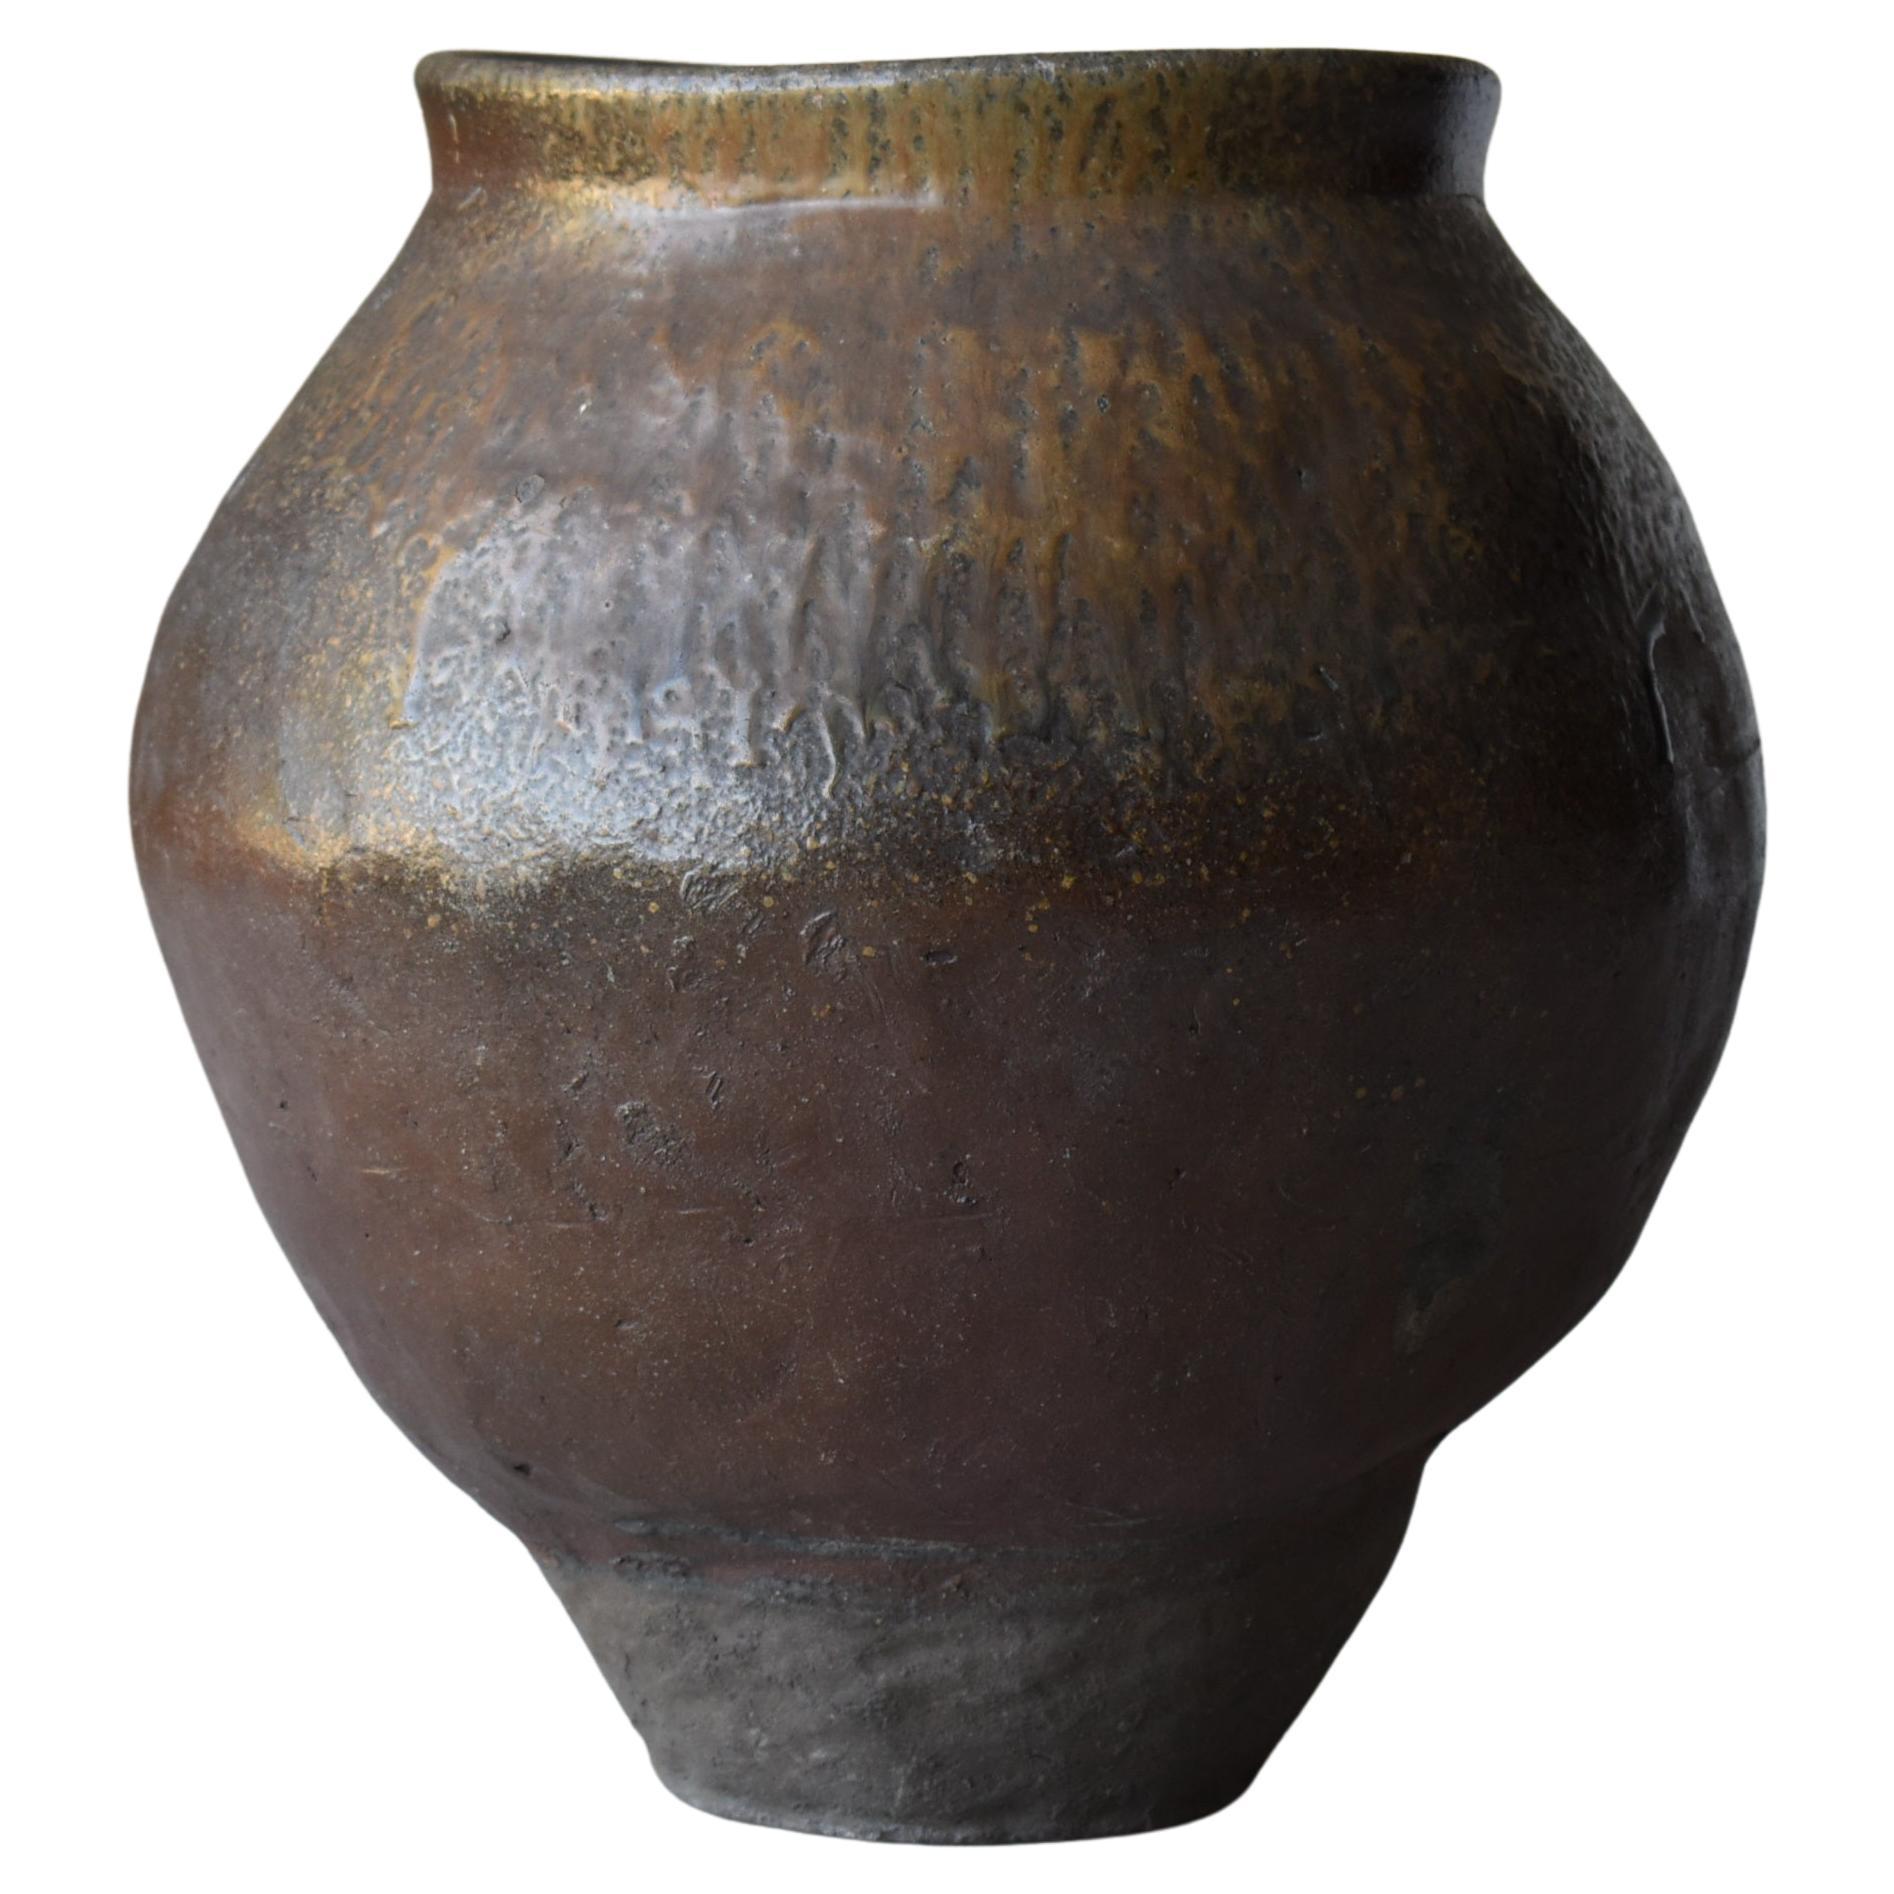 Japanese Old Pottery 1700s-1800s/Antique Flower Vase Vessel Jar Tsubo Wabisabi